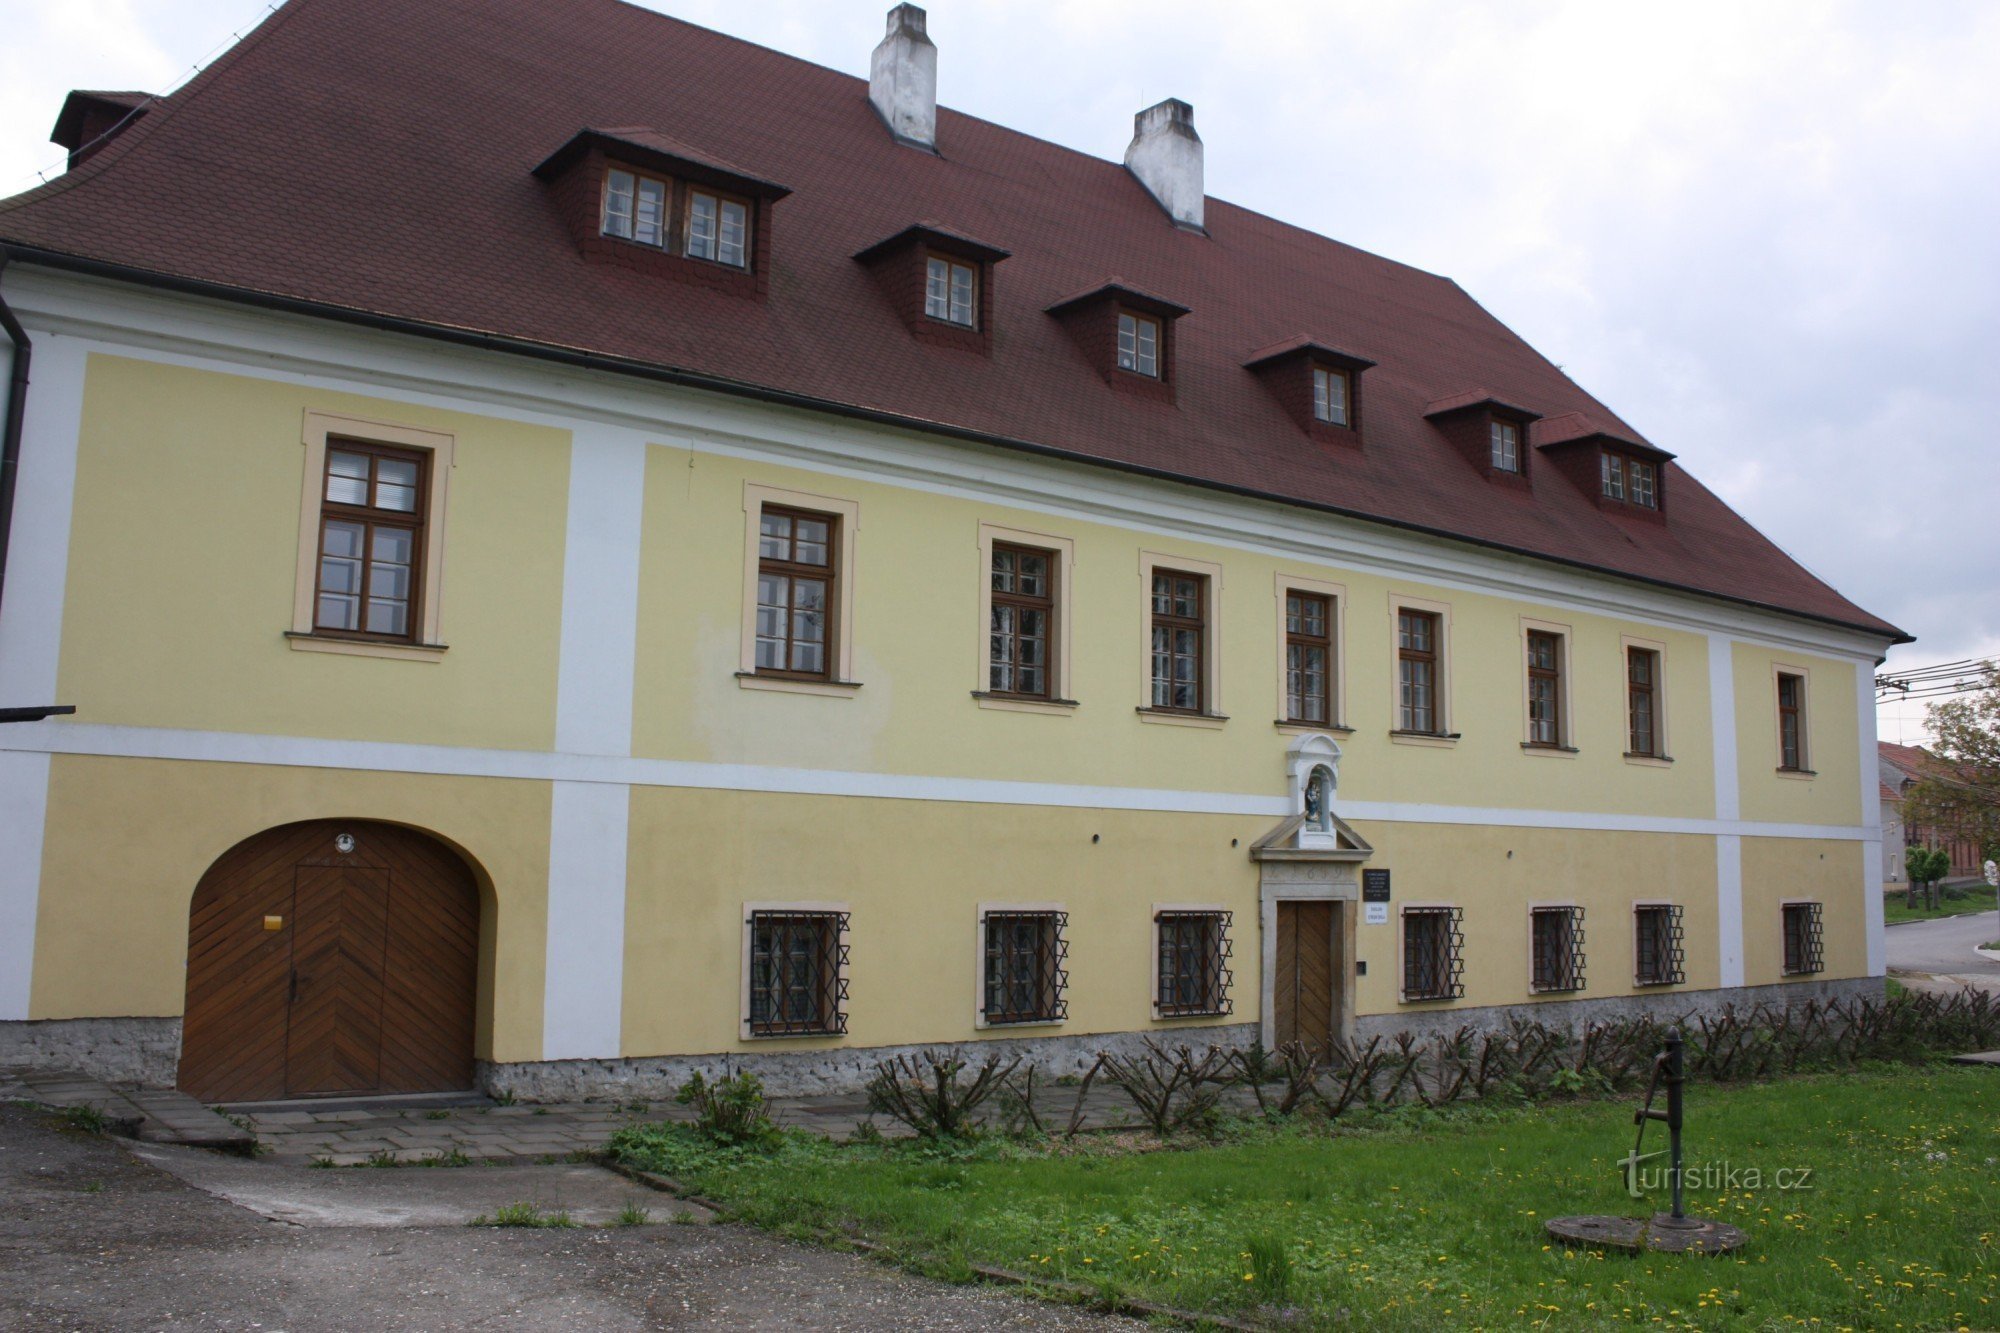 Församlingsbyggnad i Vřesovice nära Prostějov